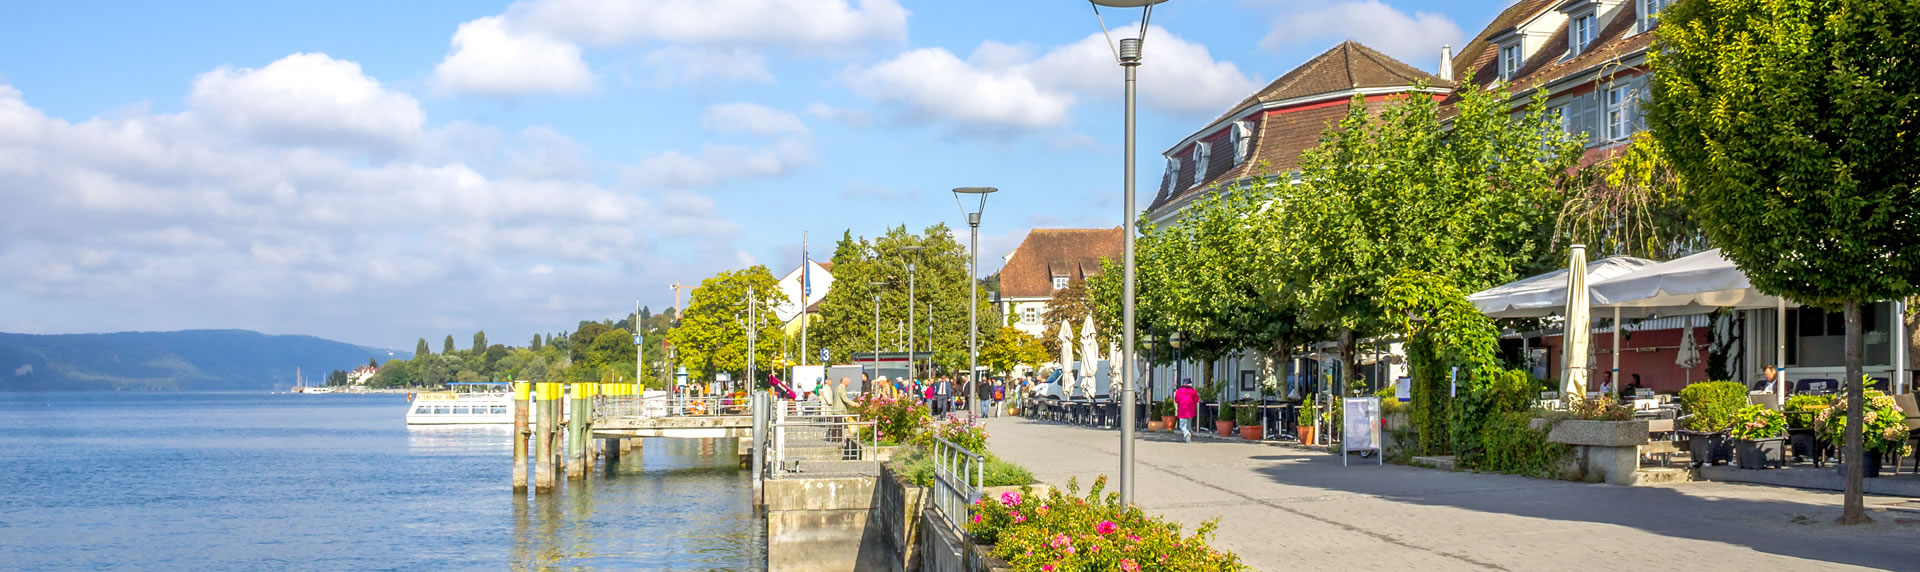 Immobilienmakler für Haus Bewertung zum verkaufen bei Ravensburg Lindau und Konstanz am Bodensee